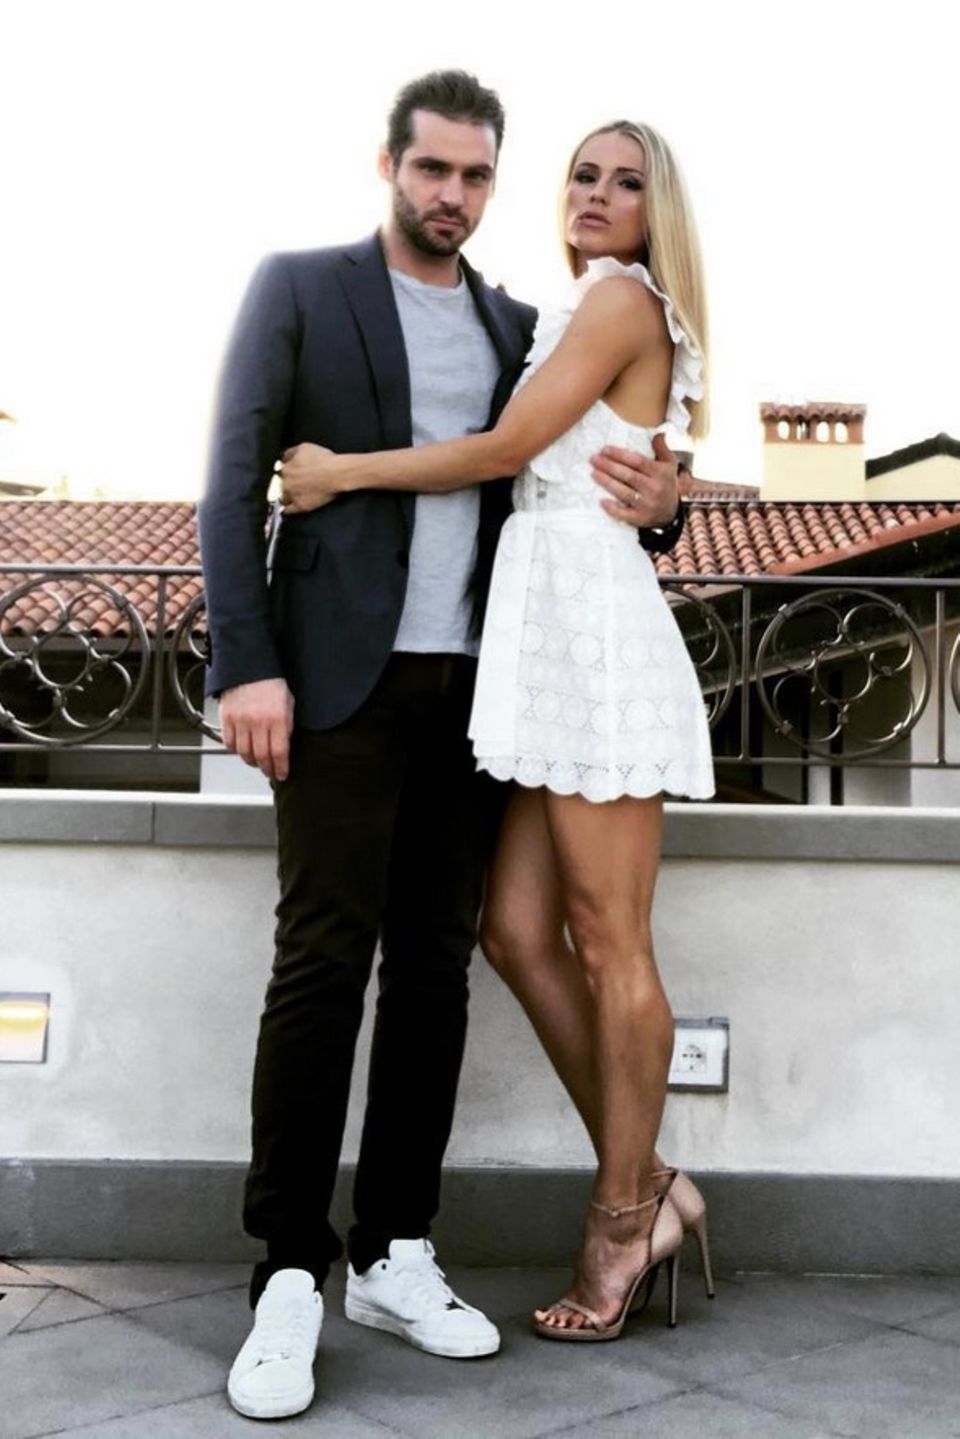 29. Juni 2018  Michelle Hunziker postet auf Instagram dieses schöne Pärchenfoto von sich und ihrem Tomaso Trussardi und versieht es mit den Hashtags #love und #marriage. 